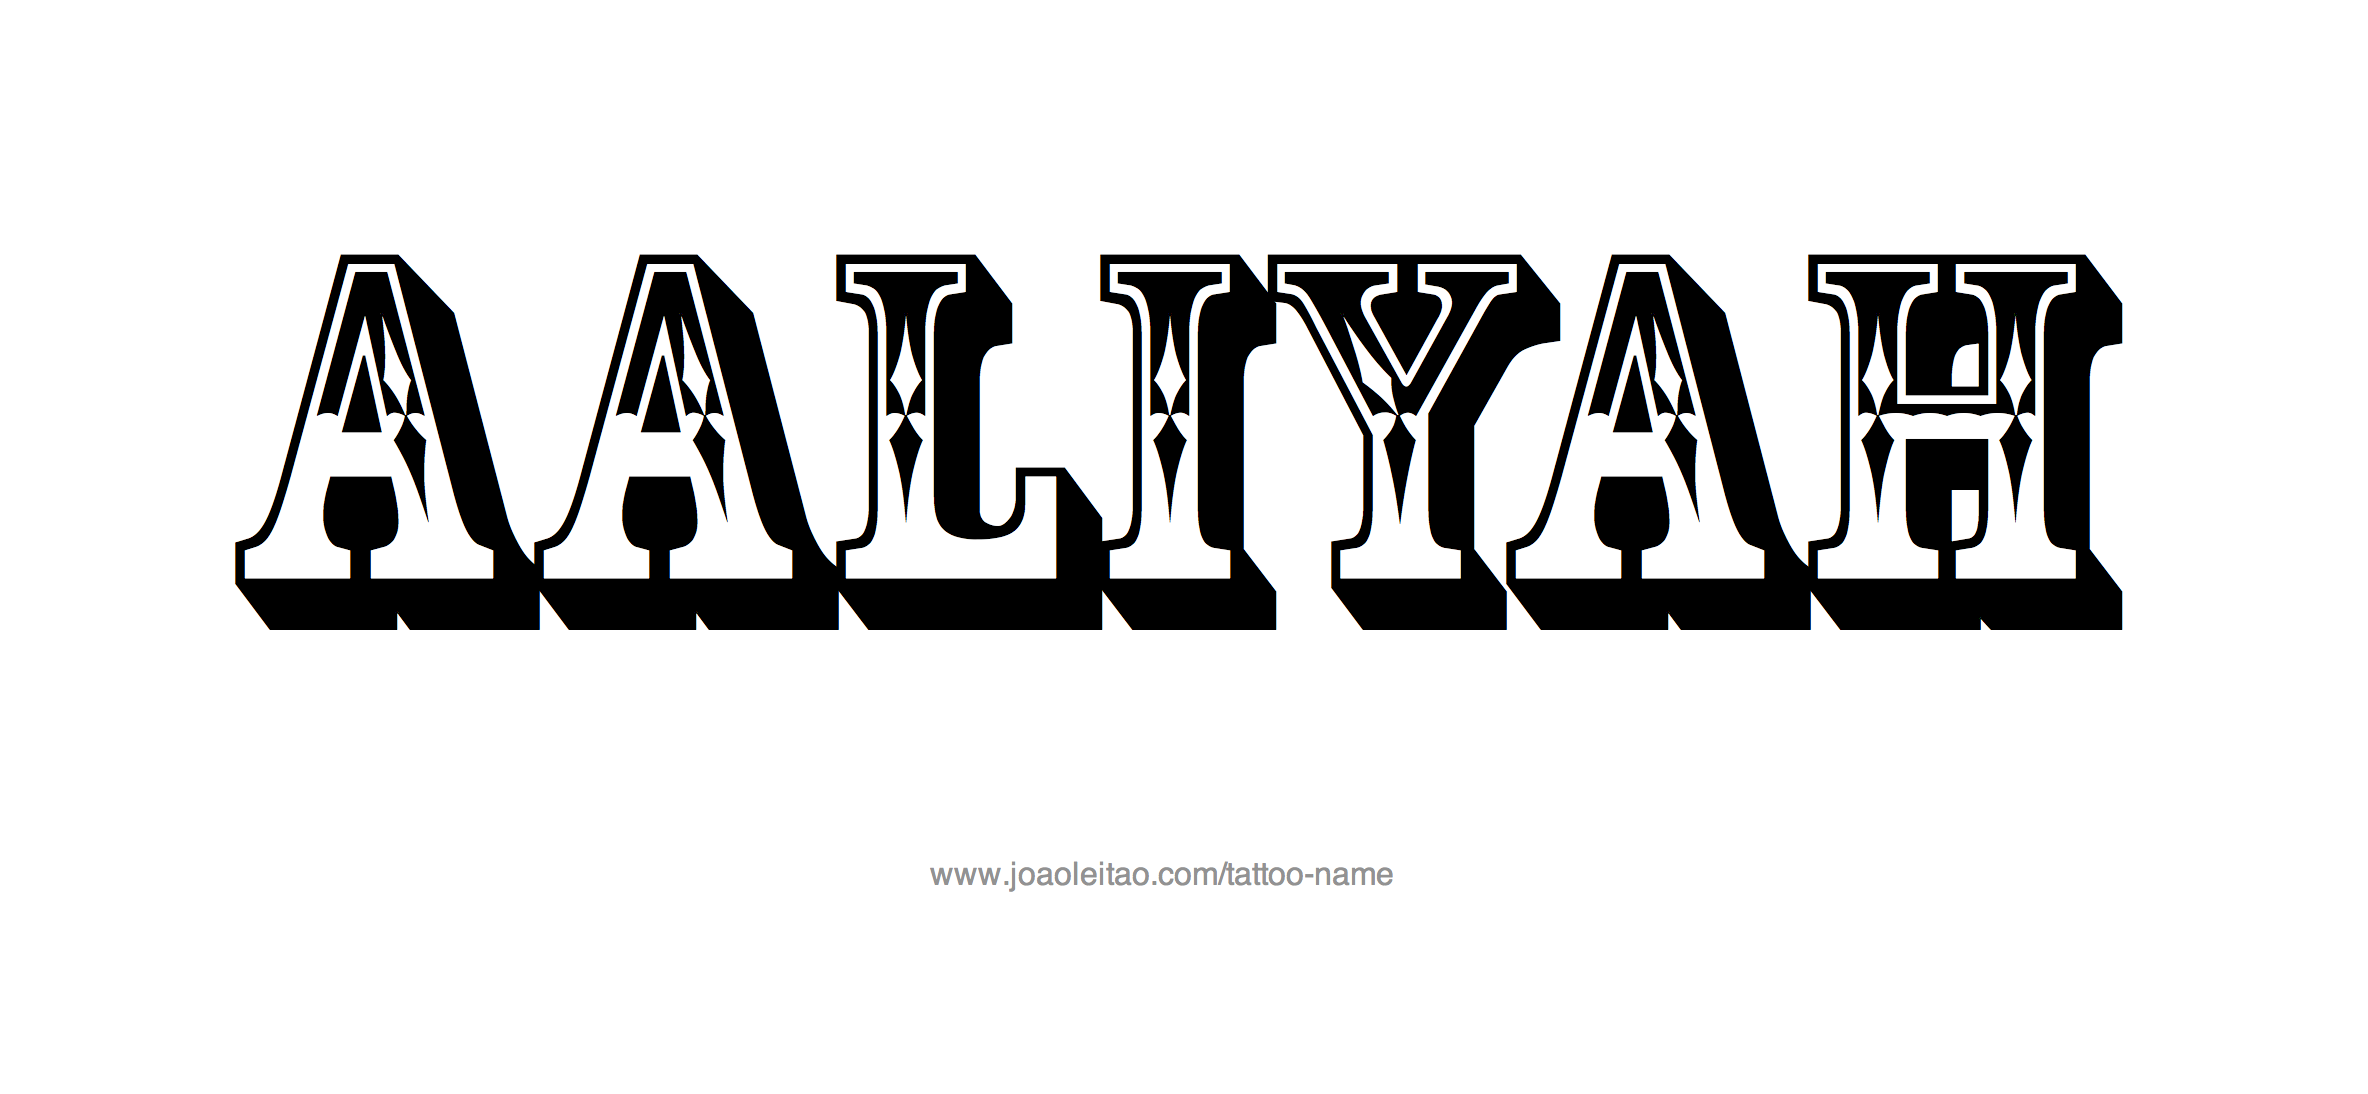 Aaliyah tattoo ideas